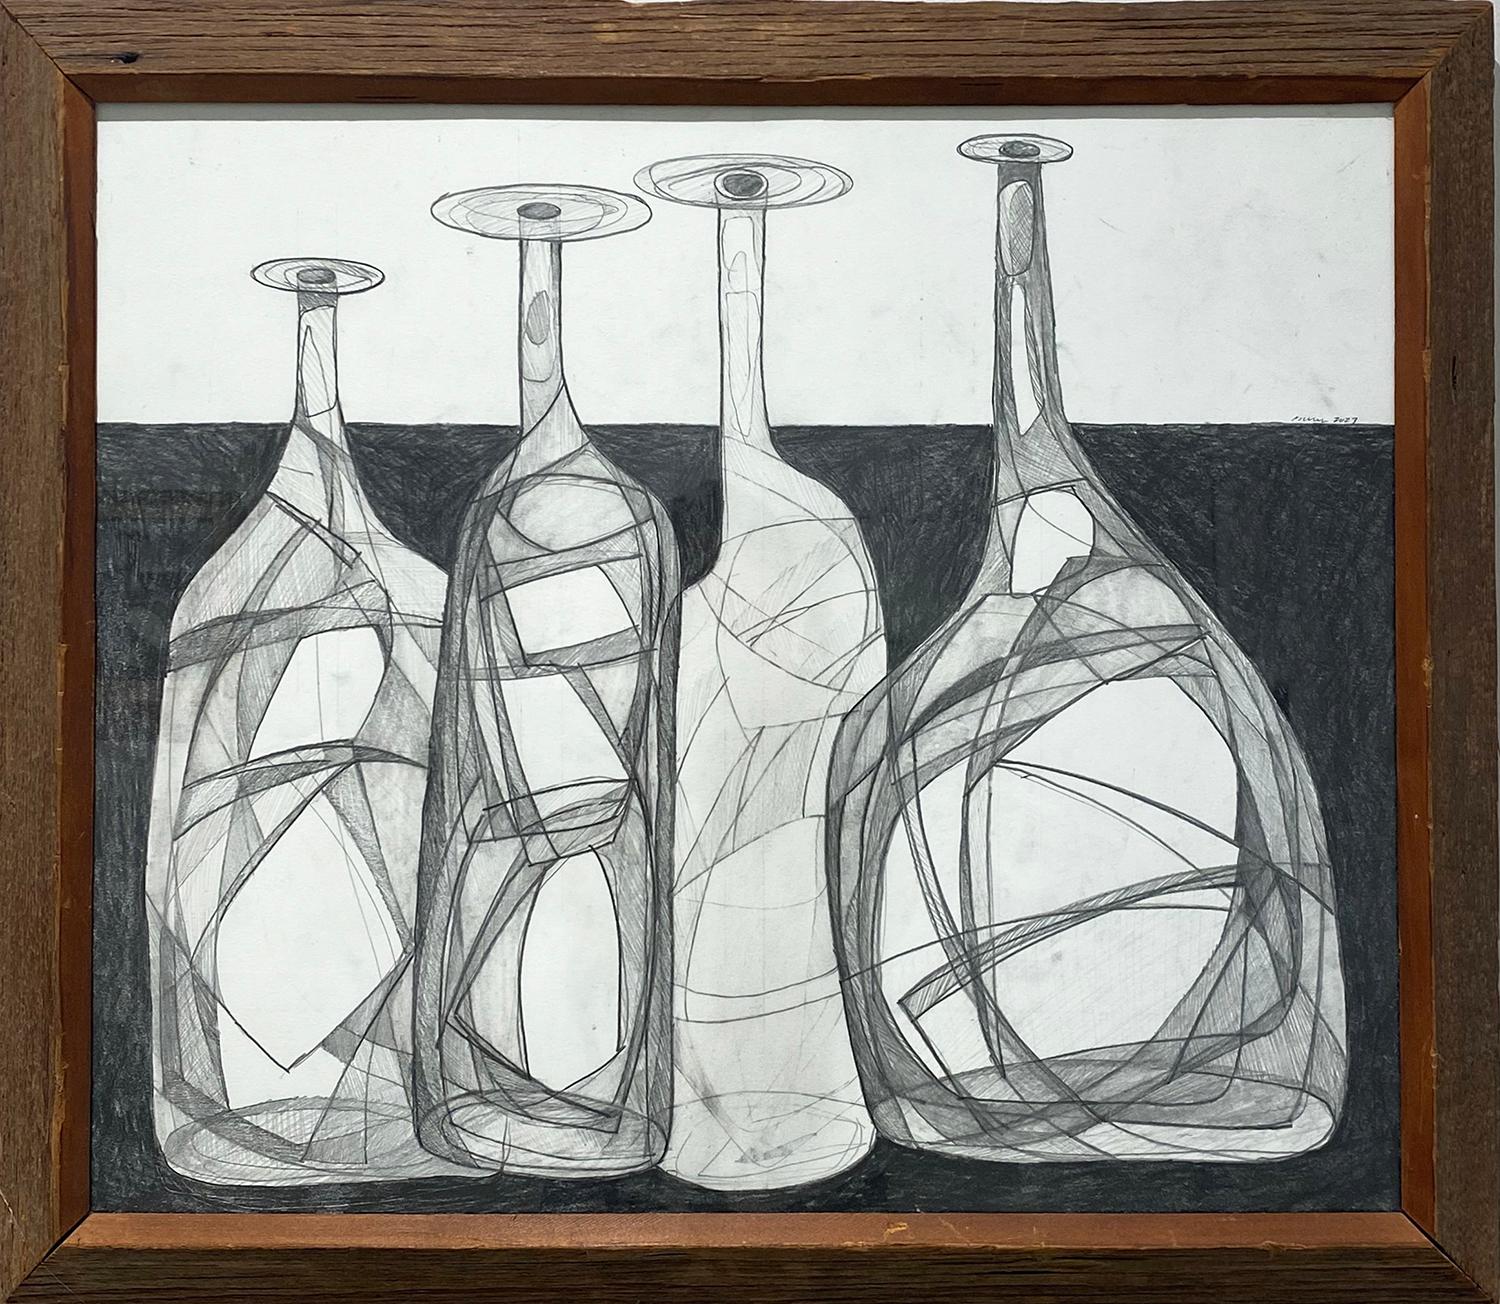 Abstract Drawing David Dew Bruner - Morandi 17 : Nature morte à la bouteille Morandi, style cubiste abstrait Dessin au crayon